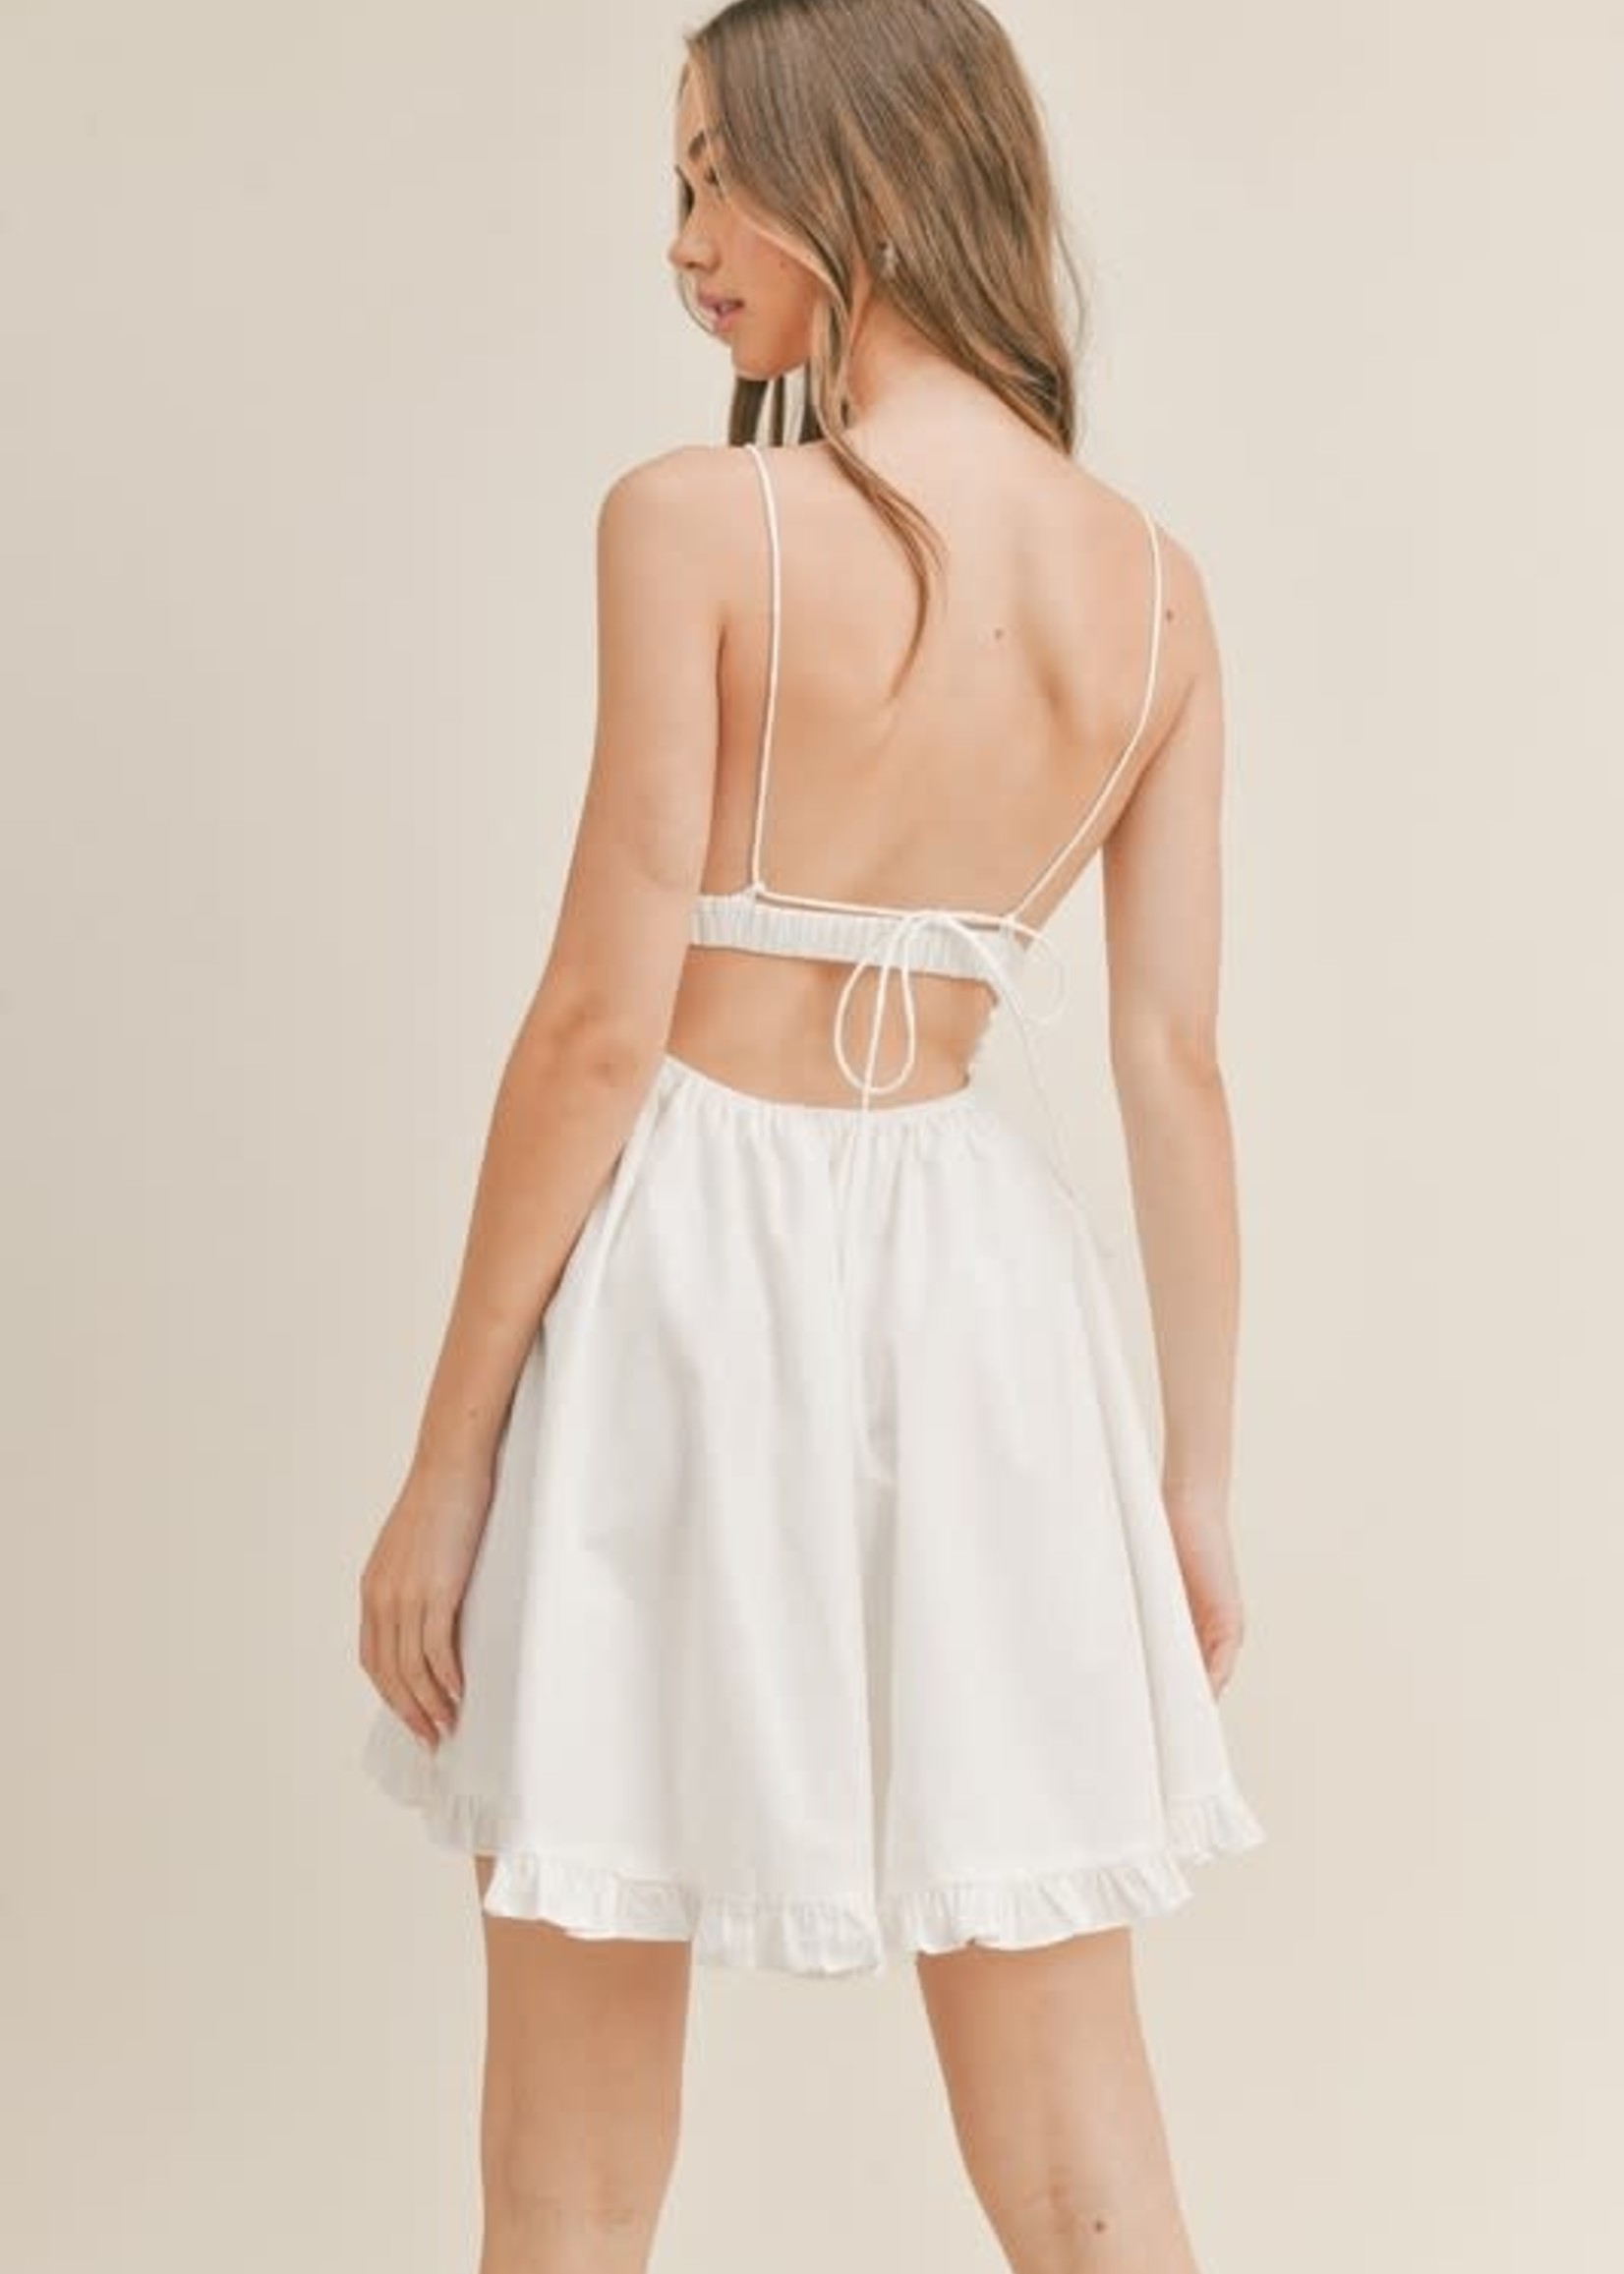 Summer Love White Dress